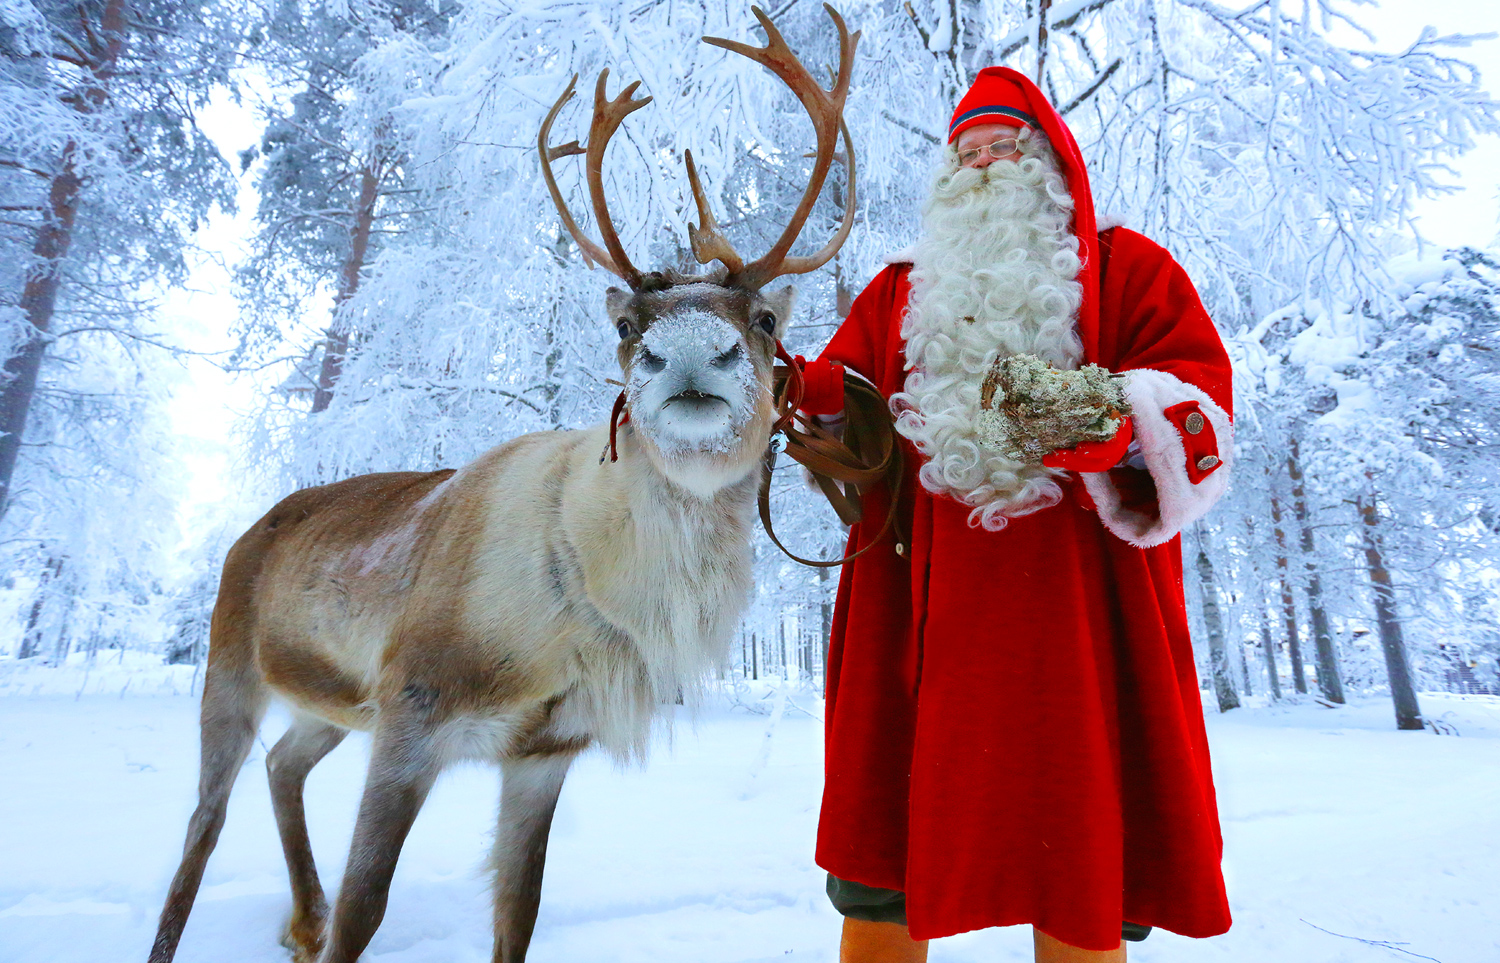 Especial Navidad: Los renos de Santa Claus